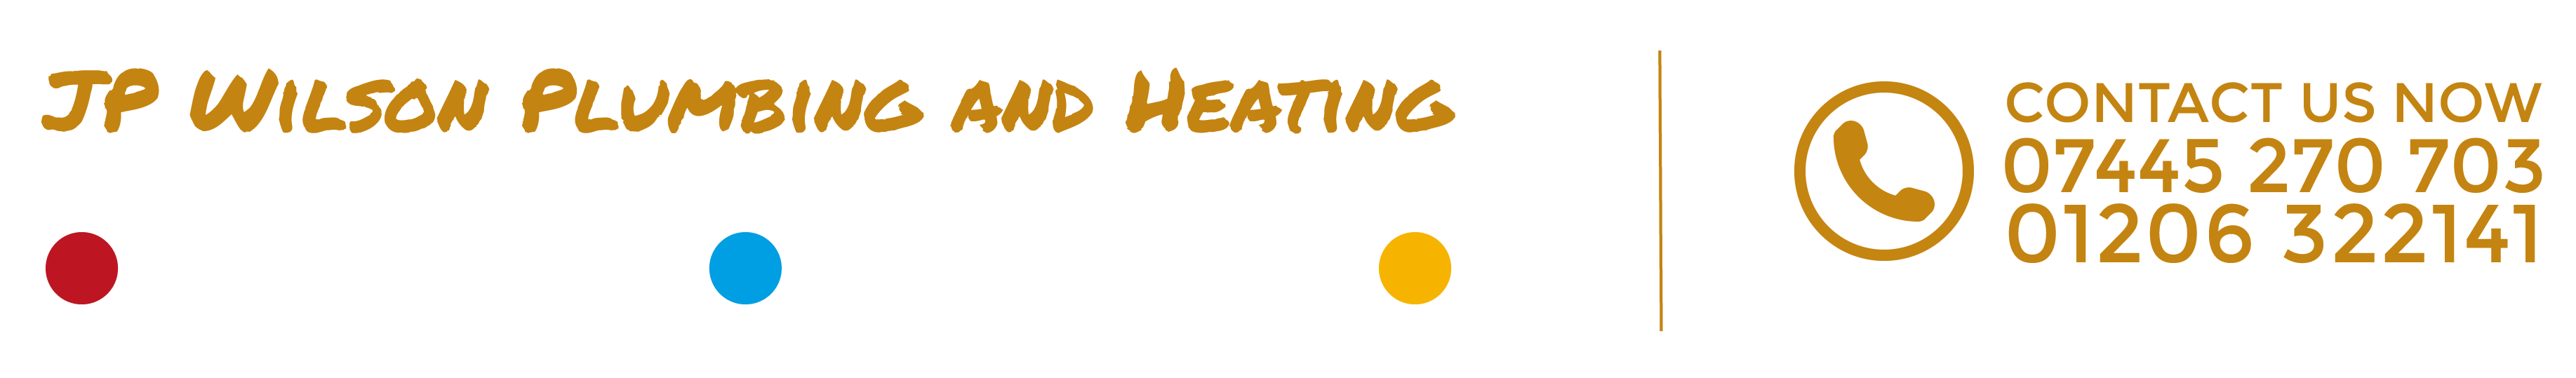 JP Wilson Plumbing & Heating